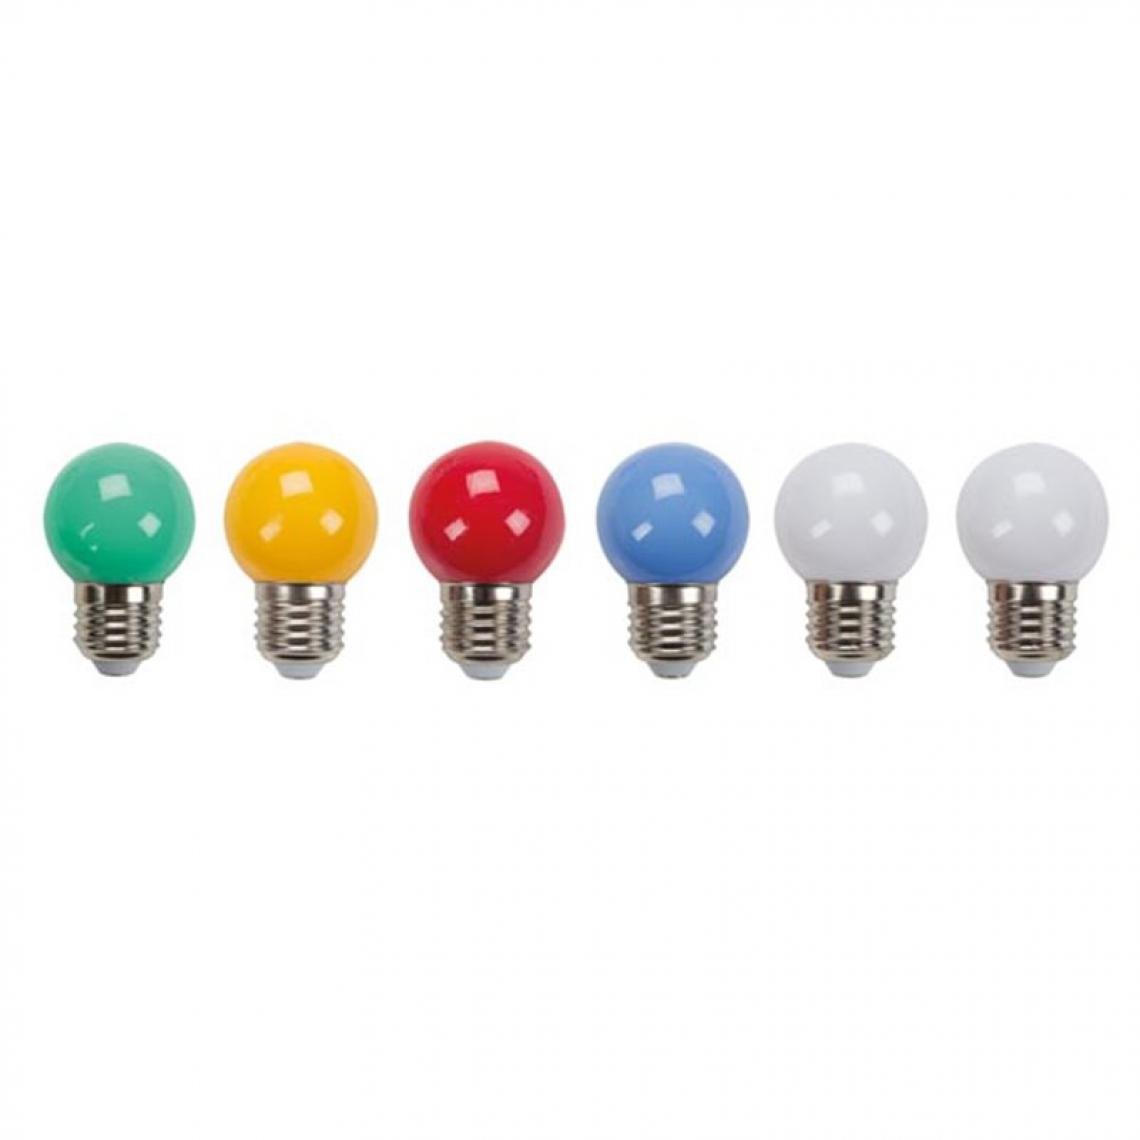 Perel - Ampoules Led Multicolores - 10 Pcs - Ampoules LED